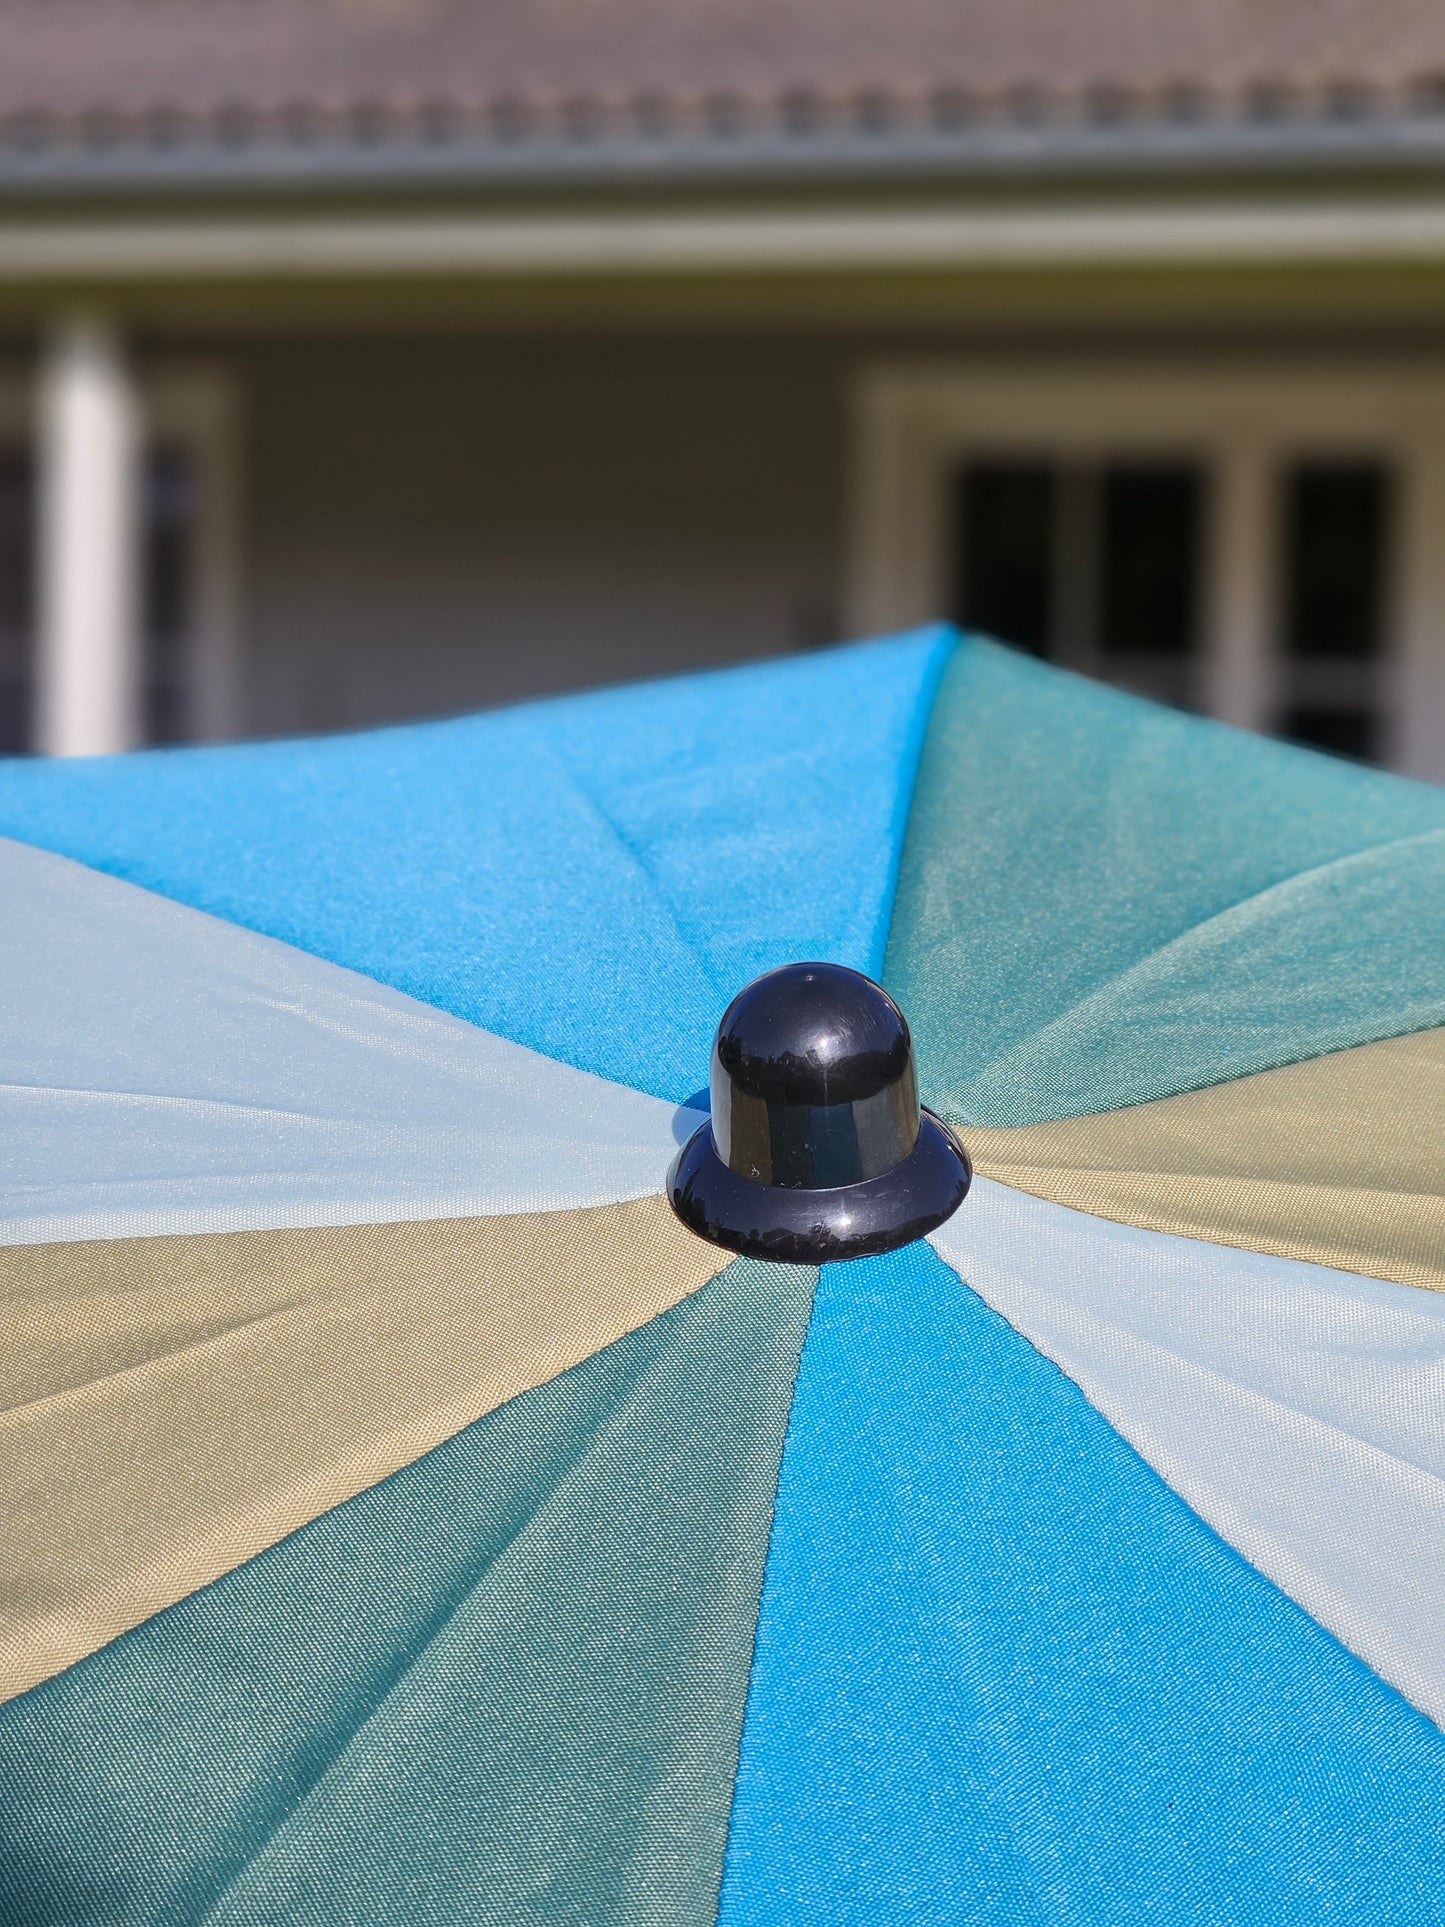 Sonnenschirm Strandschirm Schirm UV Schutz Fransen BLAU GRÜN knickbar Ø 170 cm